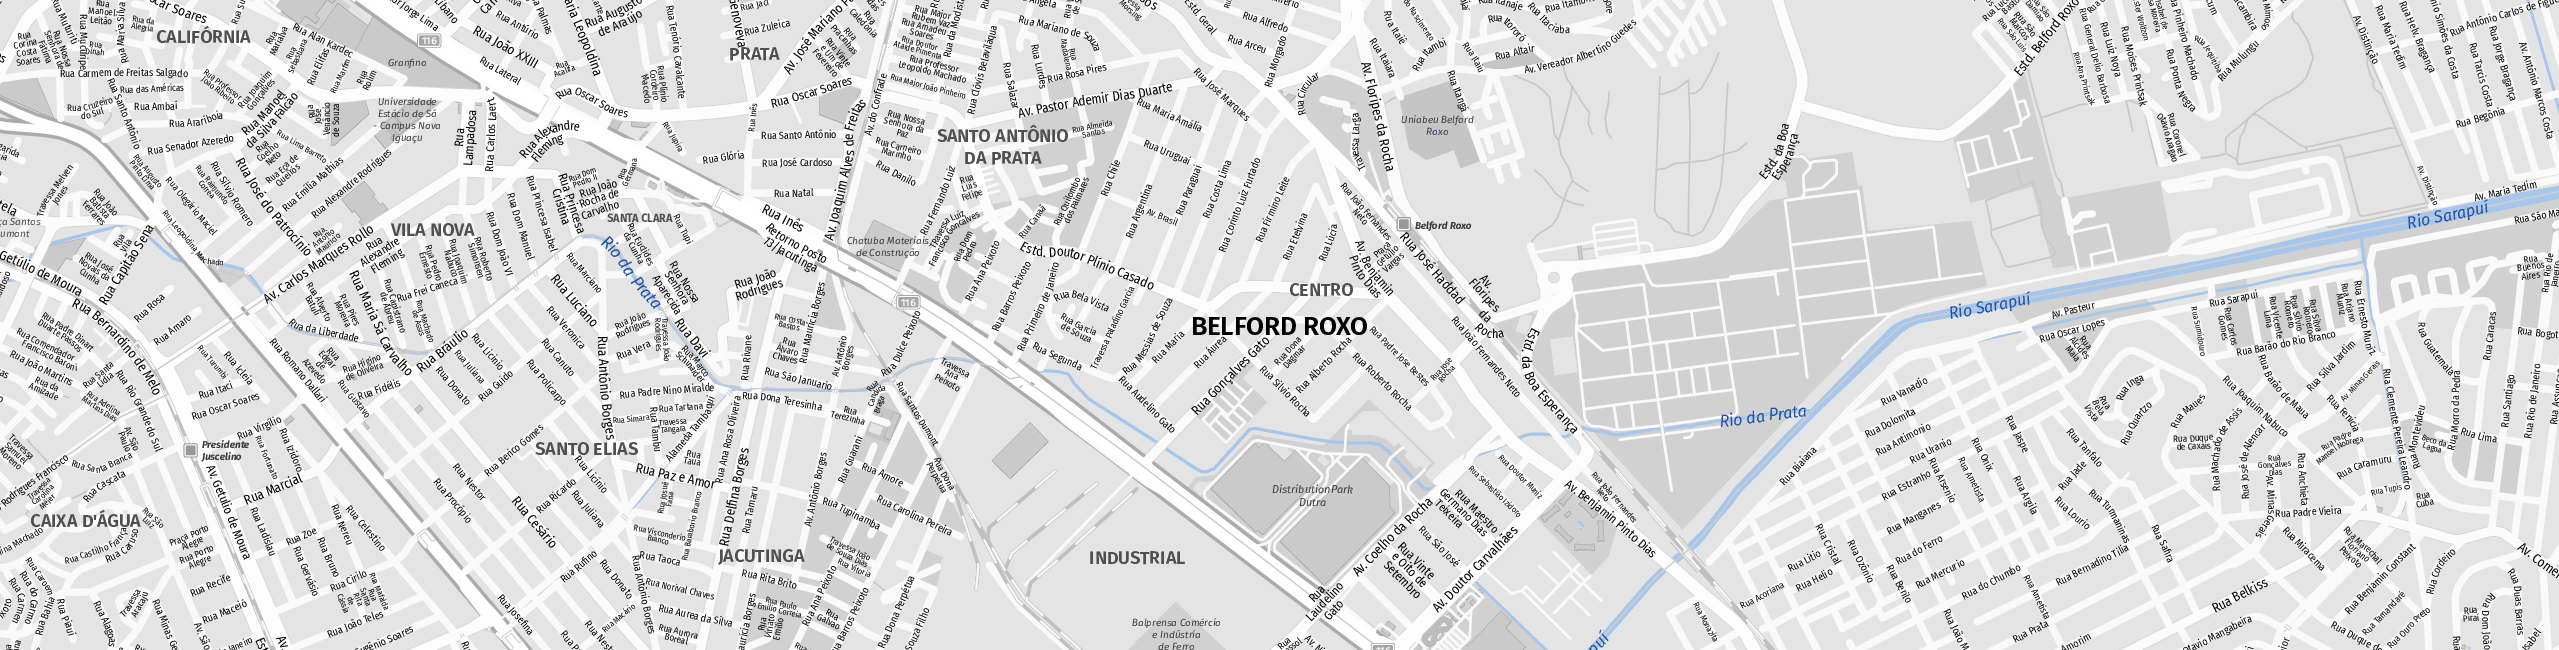 Stadtplan Belford Roxo zum Downloaden.